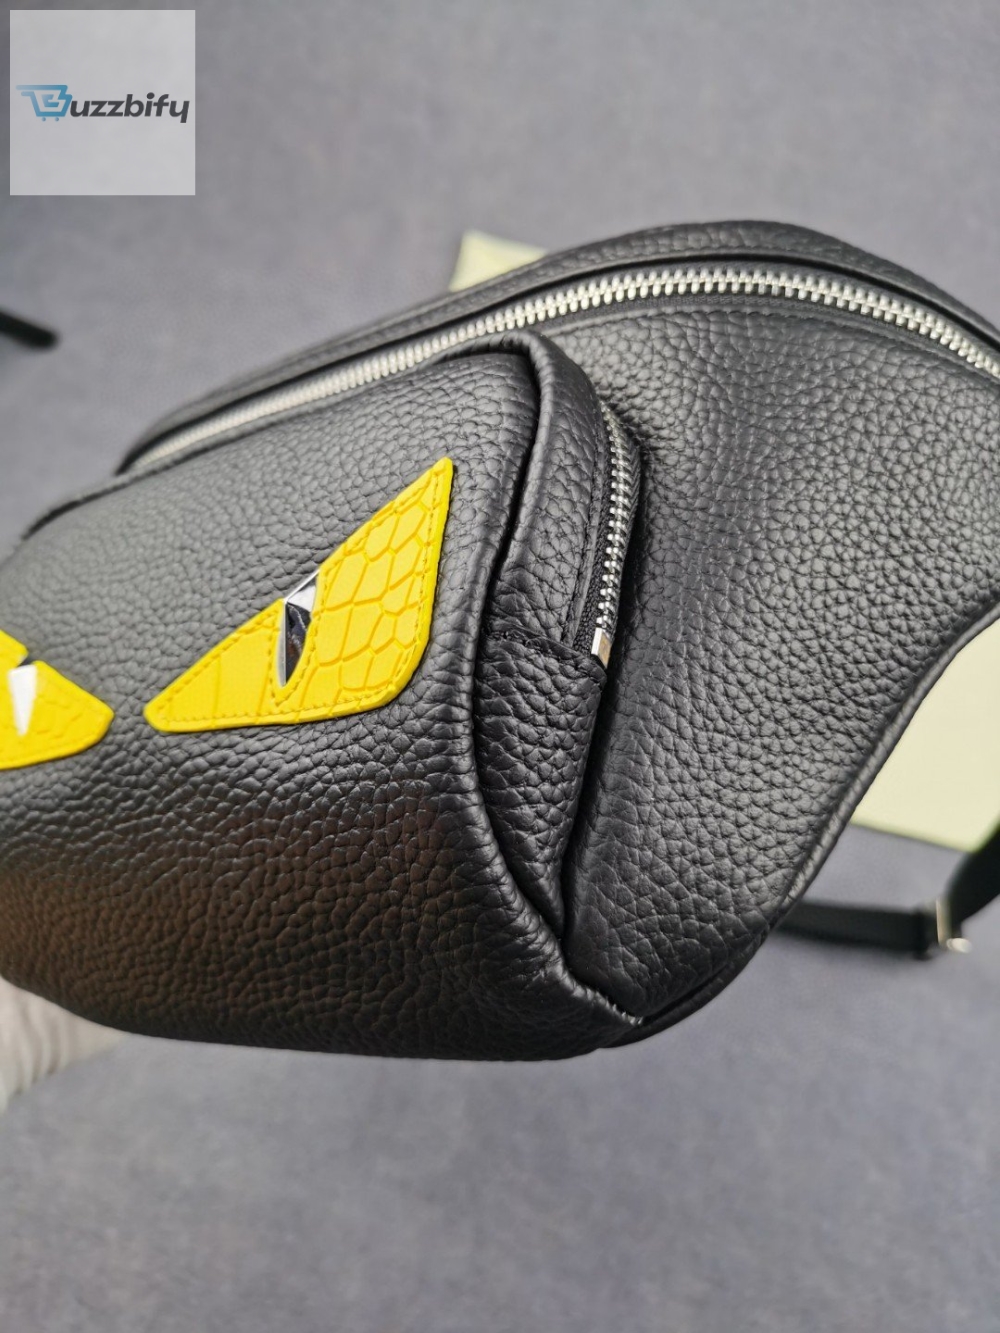 Fendi Little Monster Belt Bag Black/Yellow For Men, Men’s Bags 7.9in/20cm FF 